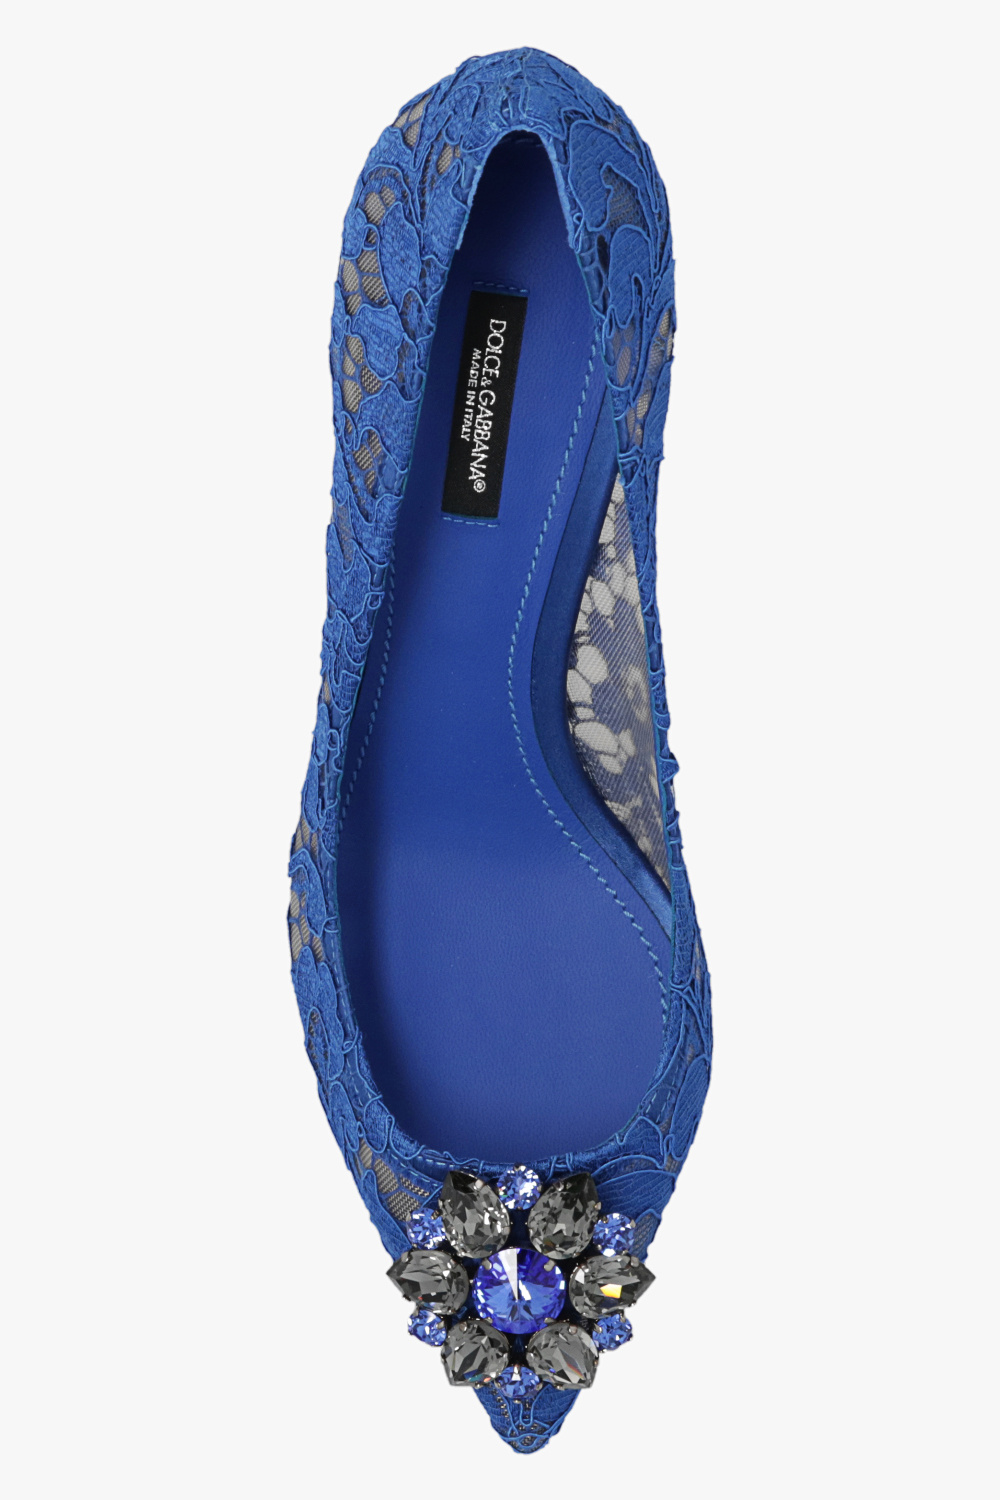 Dolce & Gabbana ‘Bellucci’ lace stiletto pumps